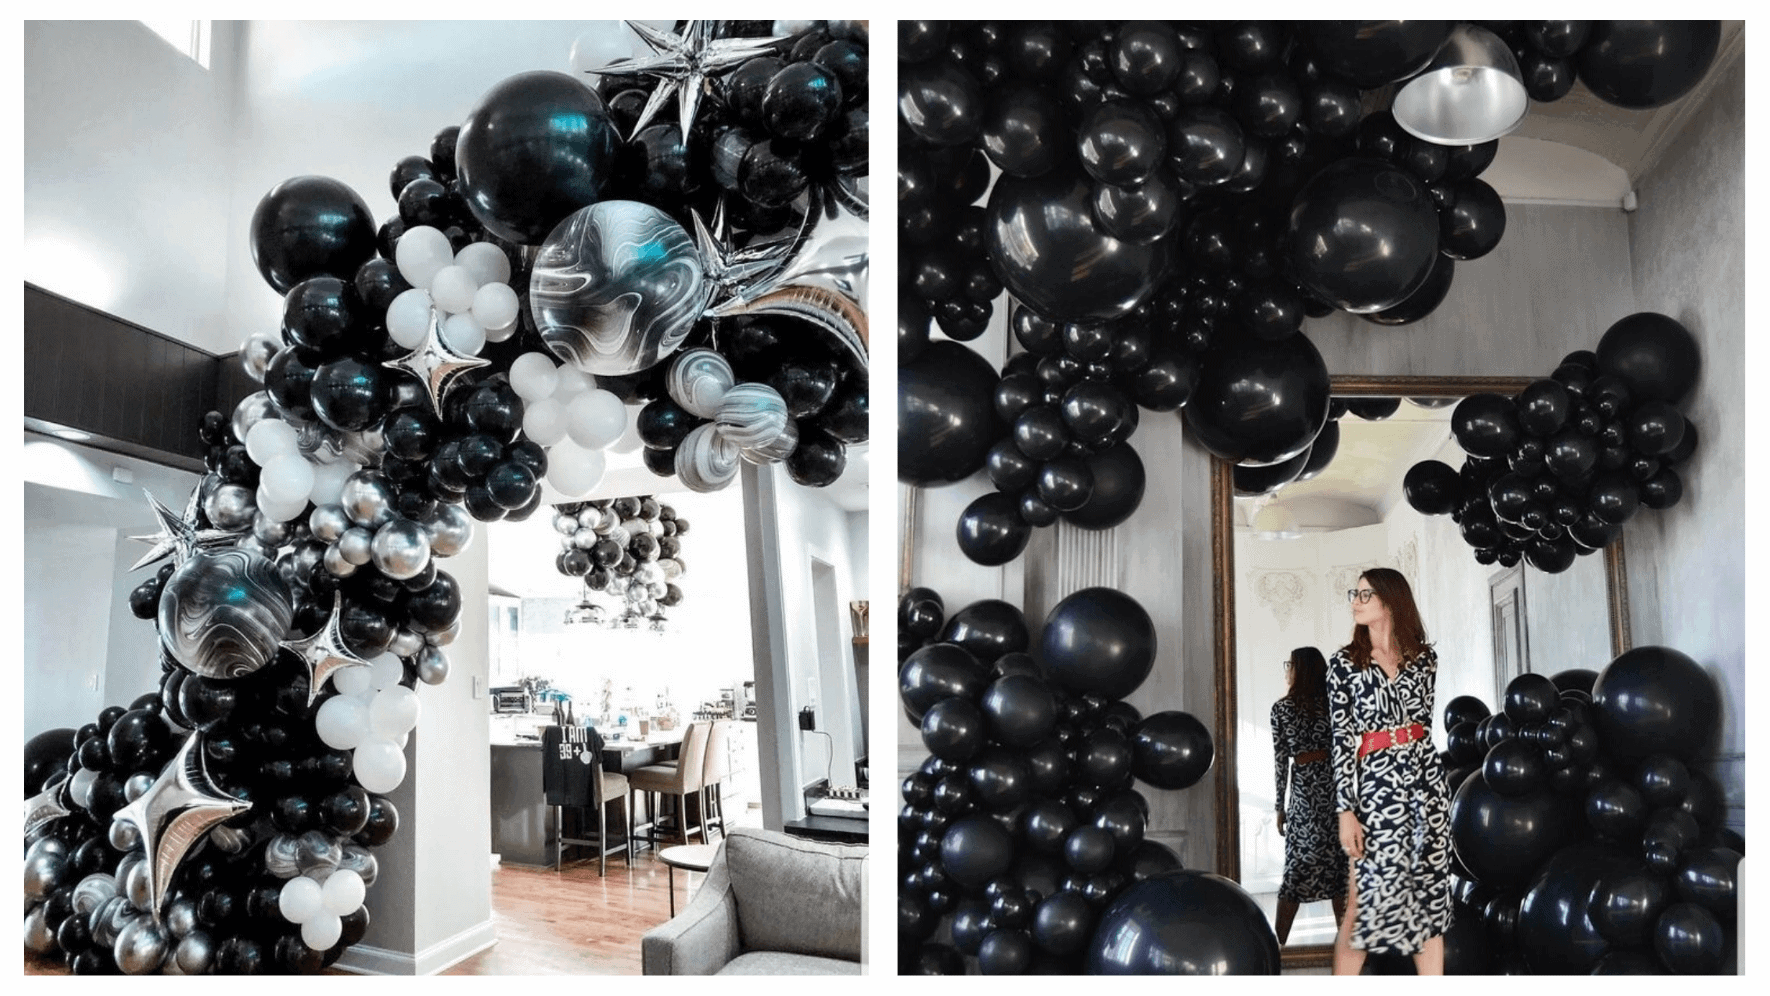 Decoración con globos para cumpleaños